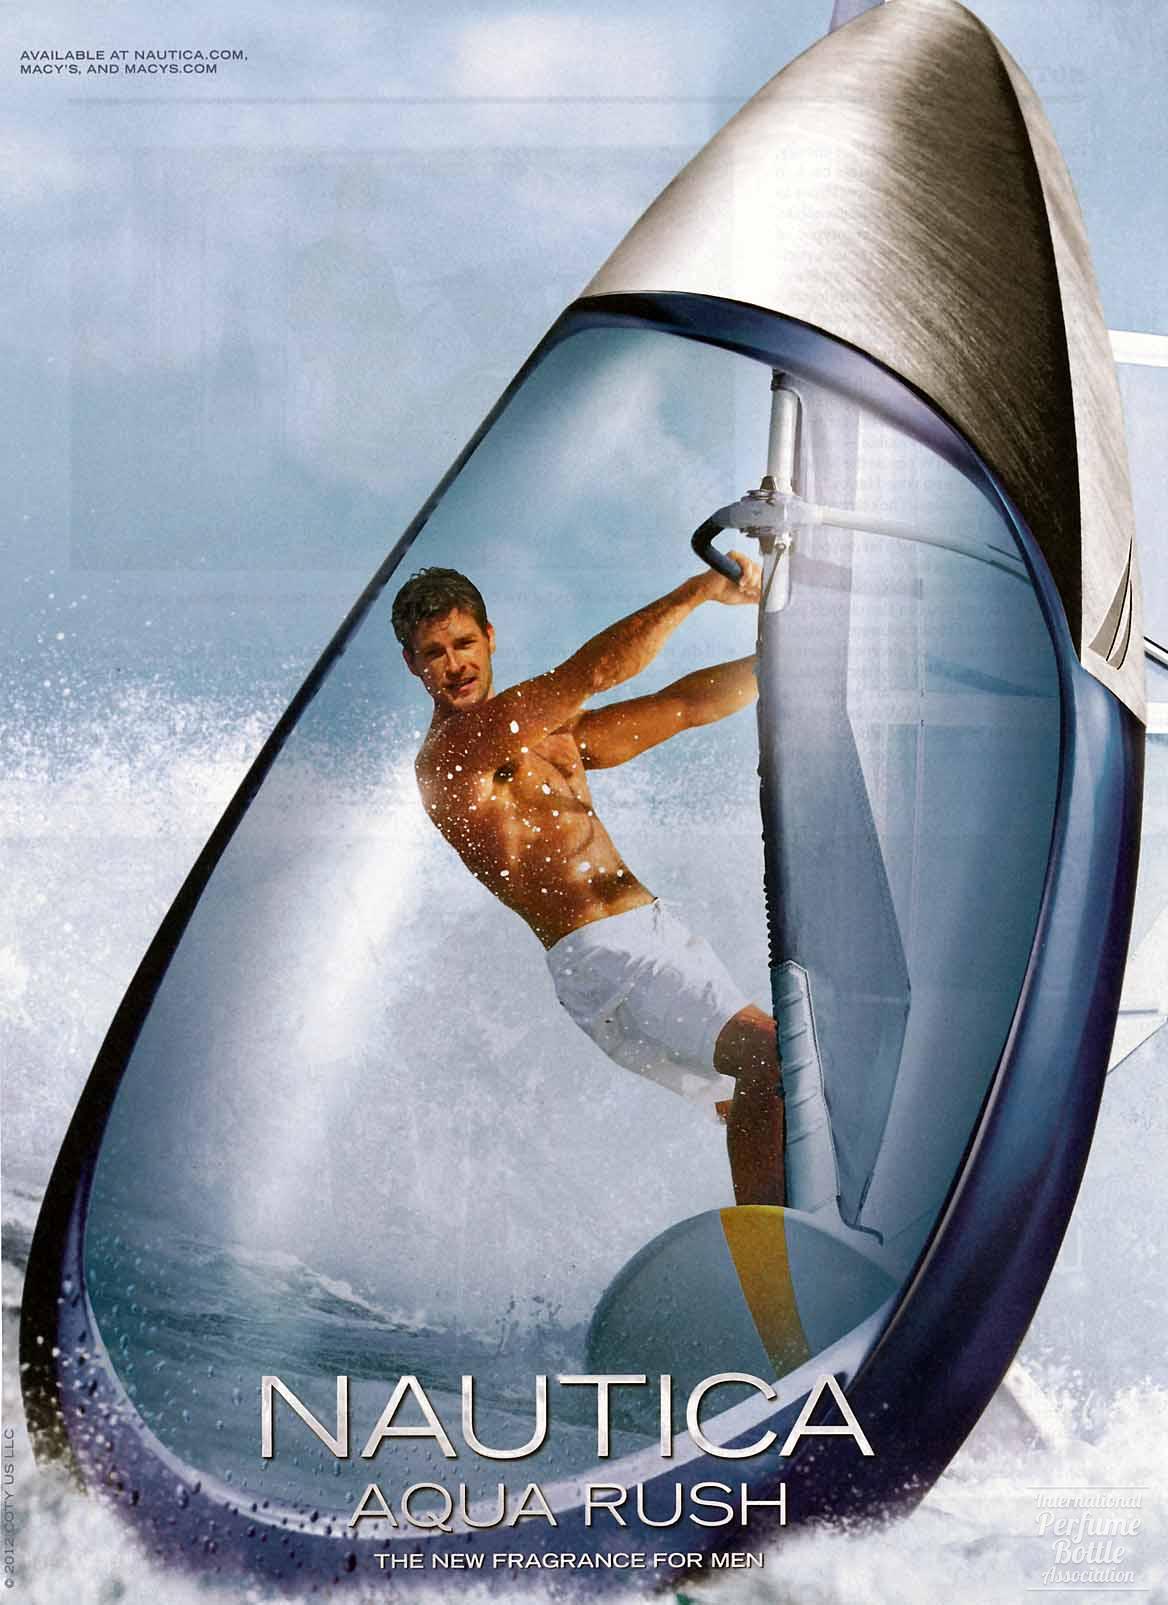 "Aqua Rush" by Nautica Advertisement - 2012